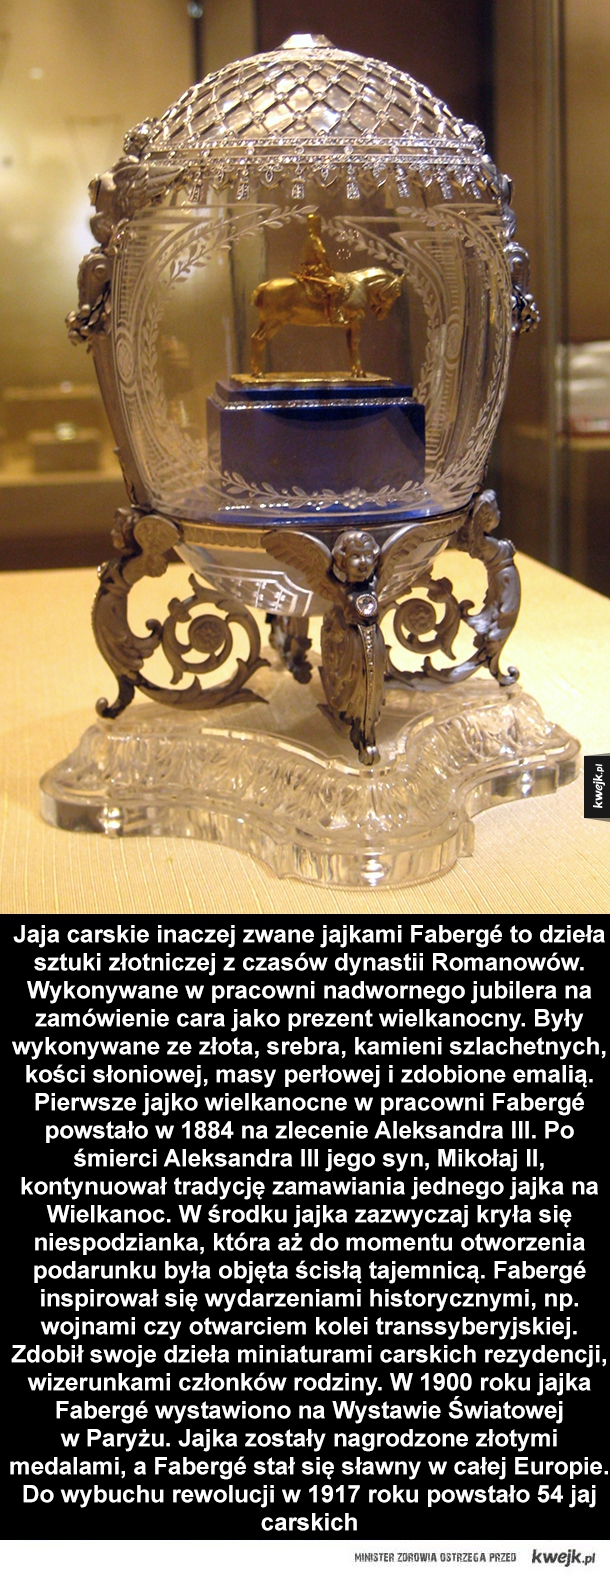 Jaja carskie inaczej zwane jajkami Fabergé to dzieła sztuki złotniczej z czasów dynastii Romanowów. Wykonywane w pracowni nadwornego jubilera na zamówienie cara jako prezent wielkanocny. Były wykonywane ze złota, srebra, kamieni szlachetnych, kości słoniow